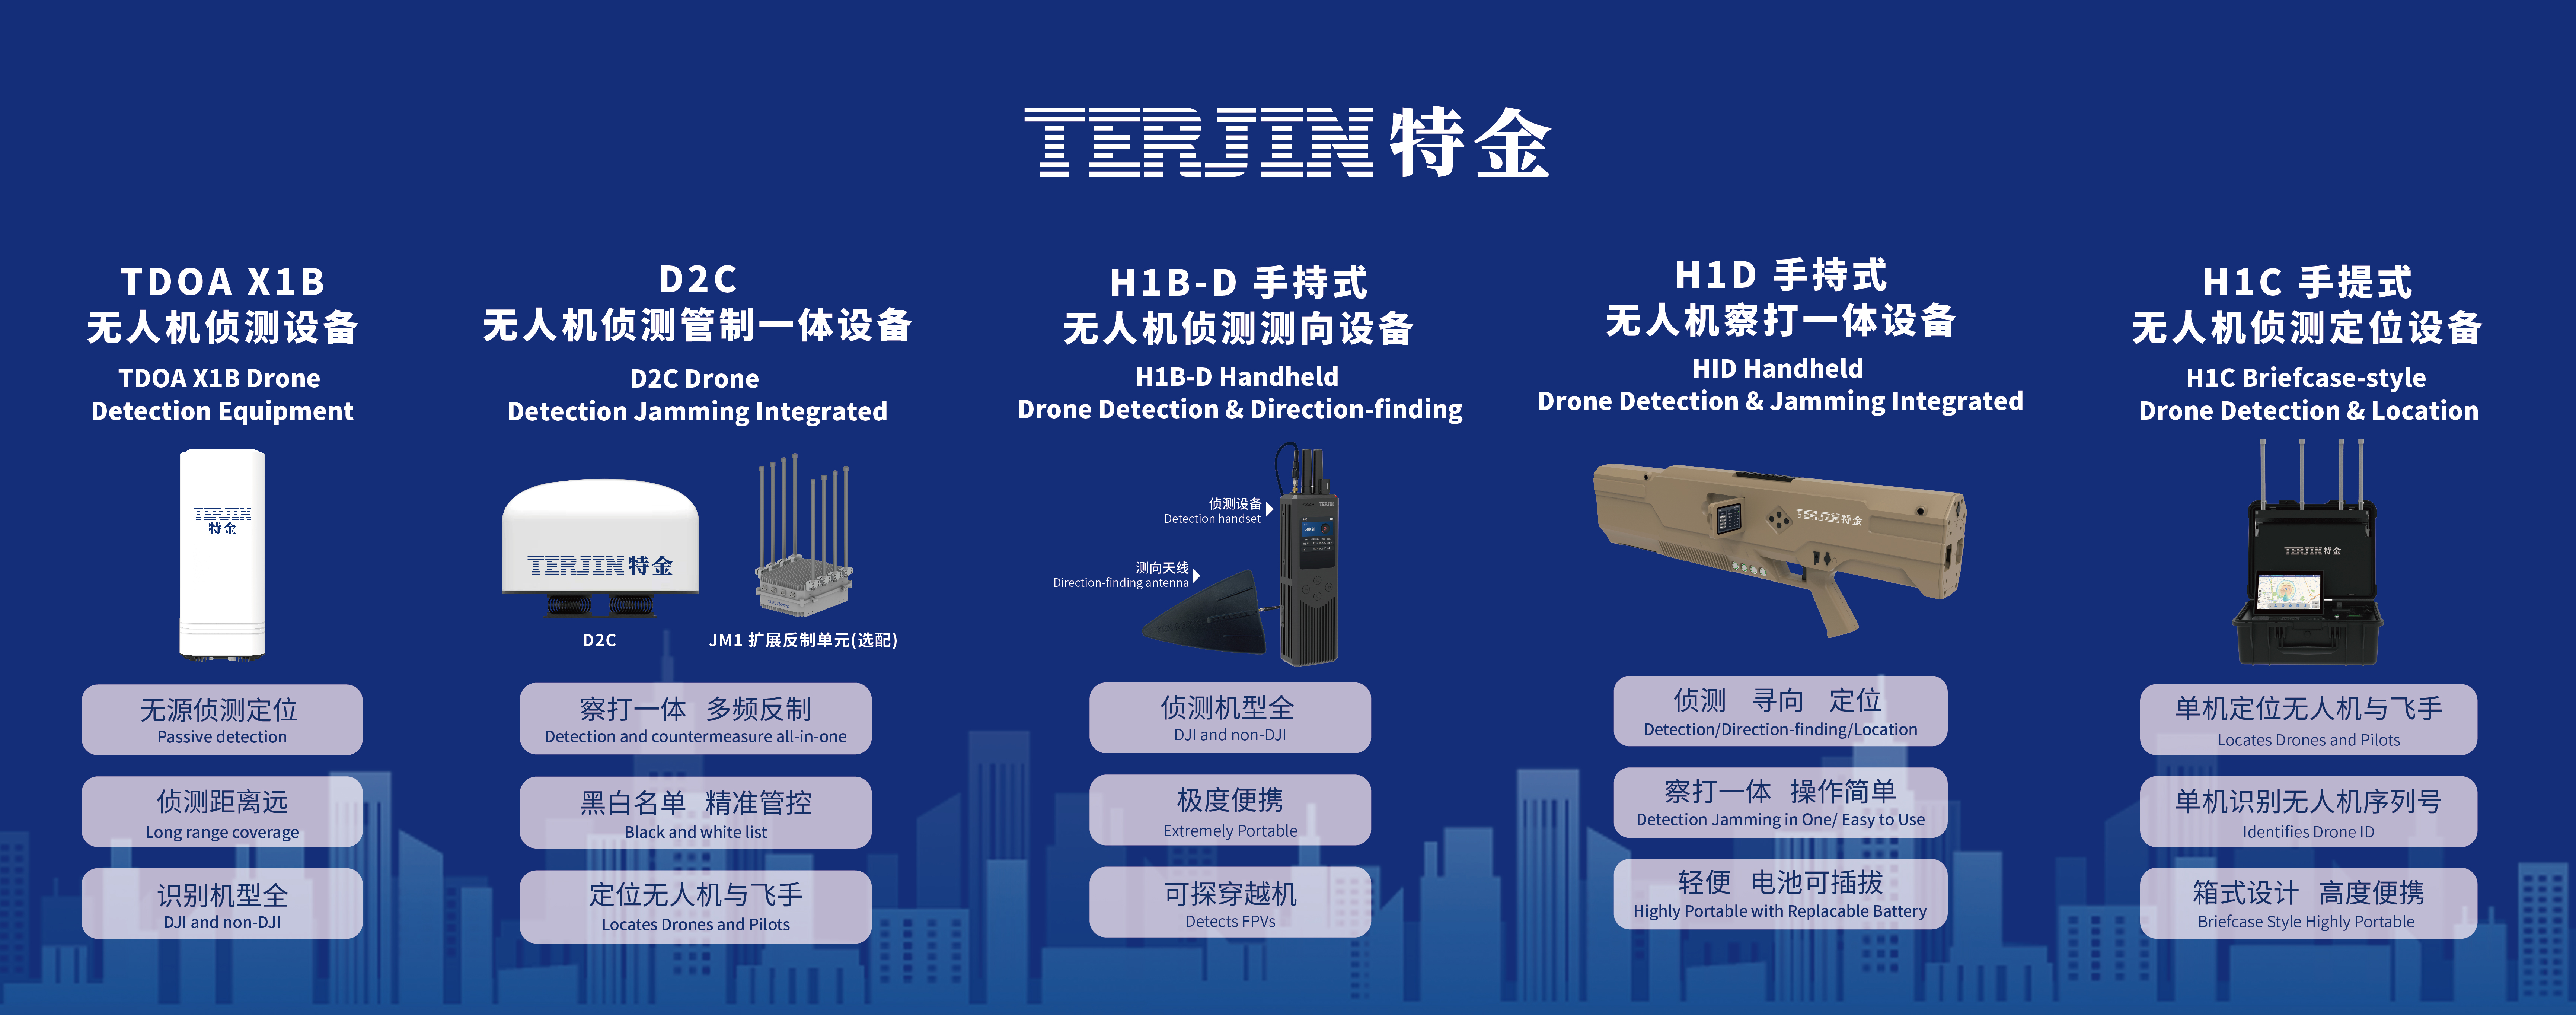 【展会预告】第12届中国(重庆)智慧城市、社会公共安全产品技术展览会